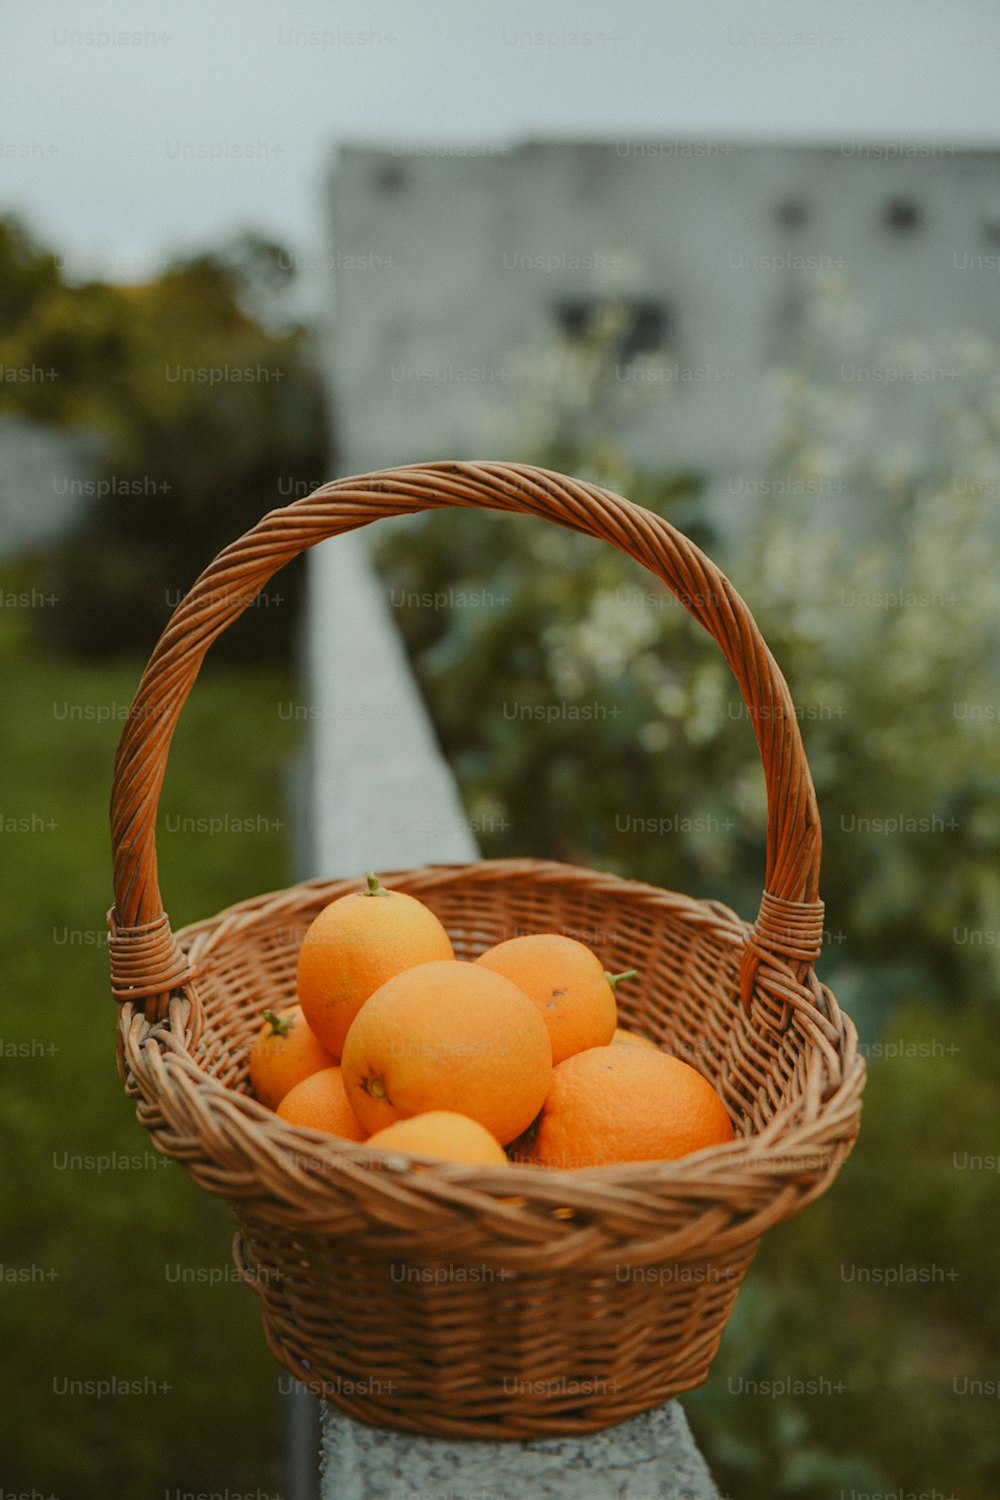 Una cesta de mimbre llena de naranjas sentada en una repisa